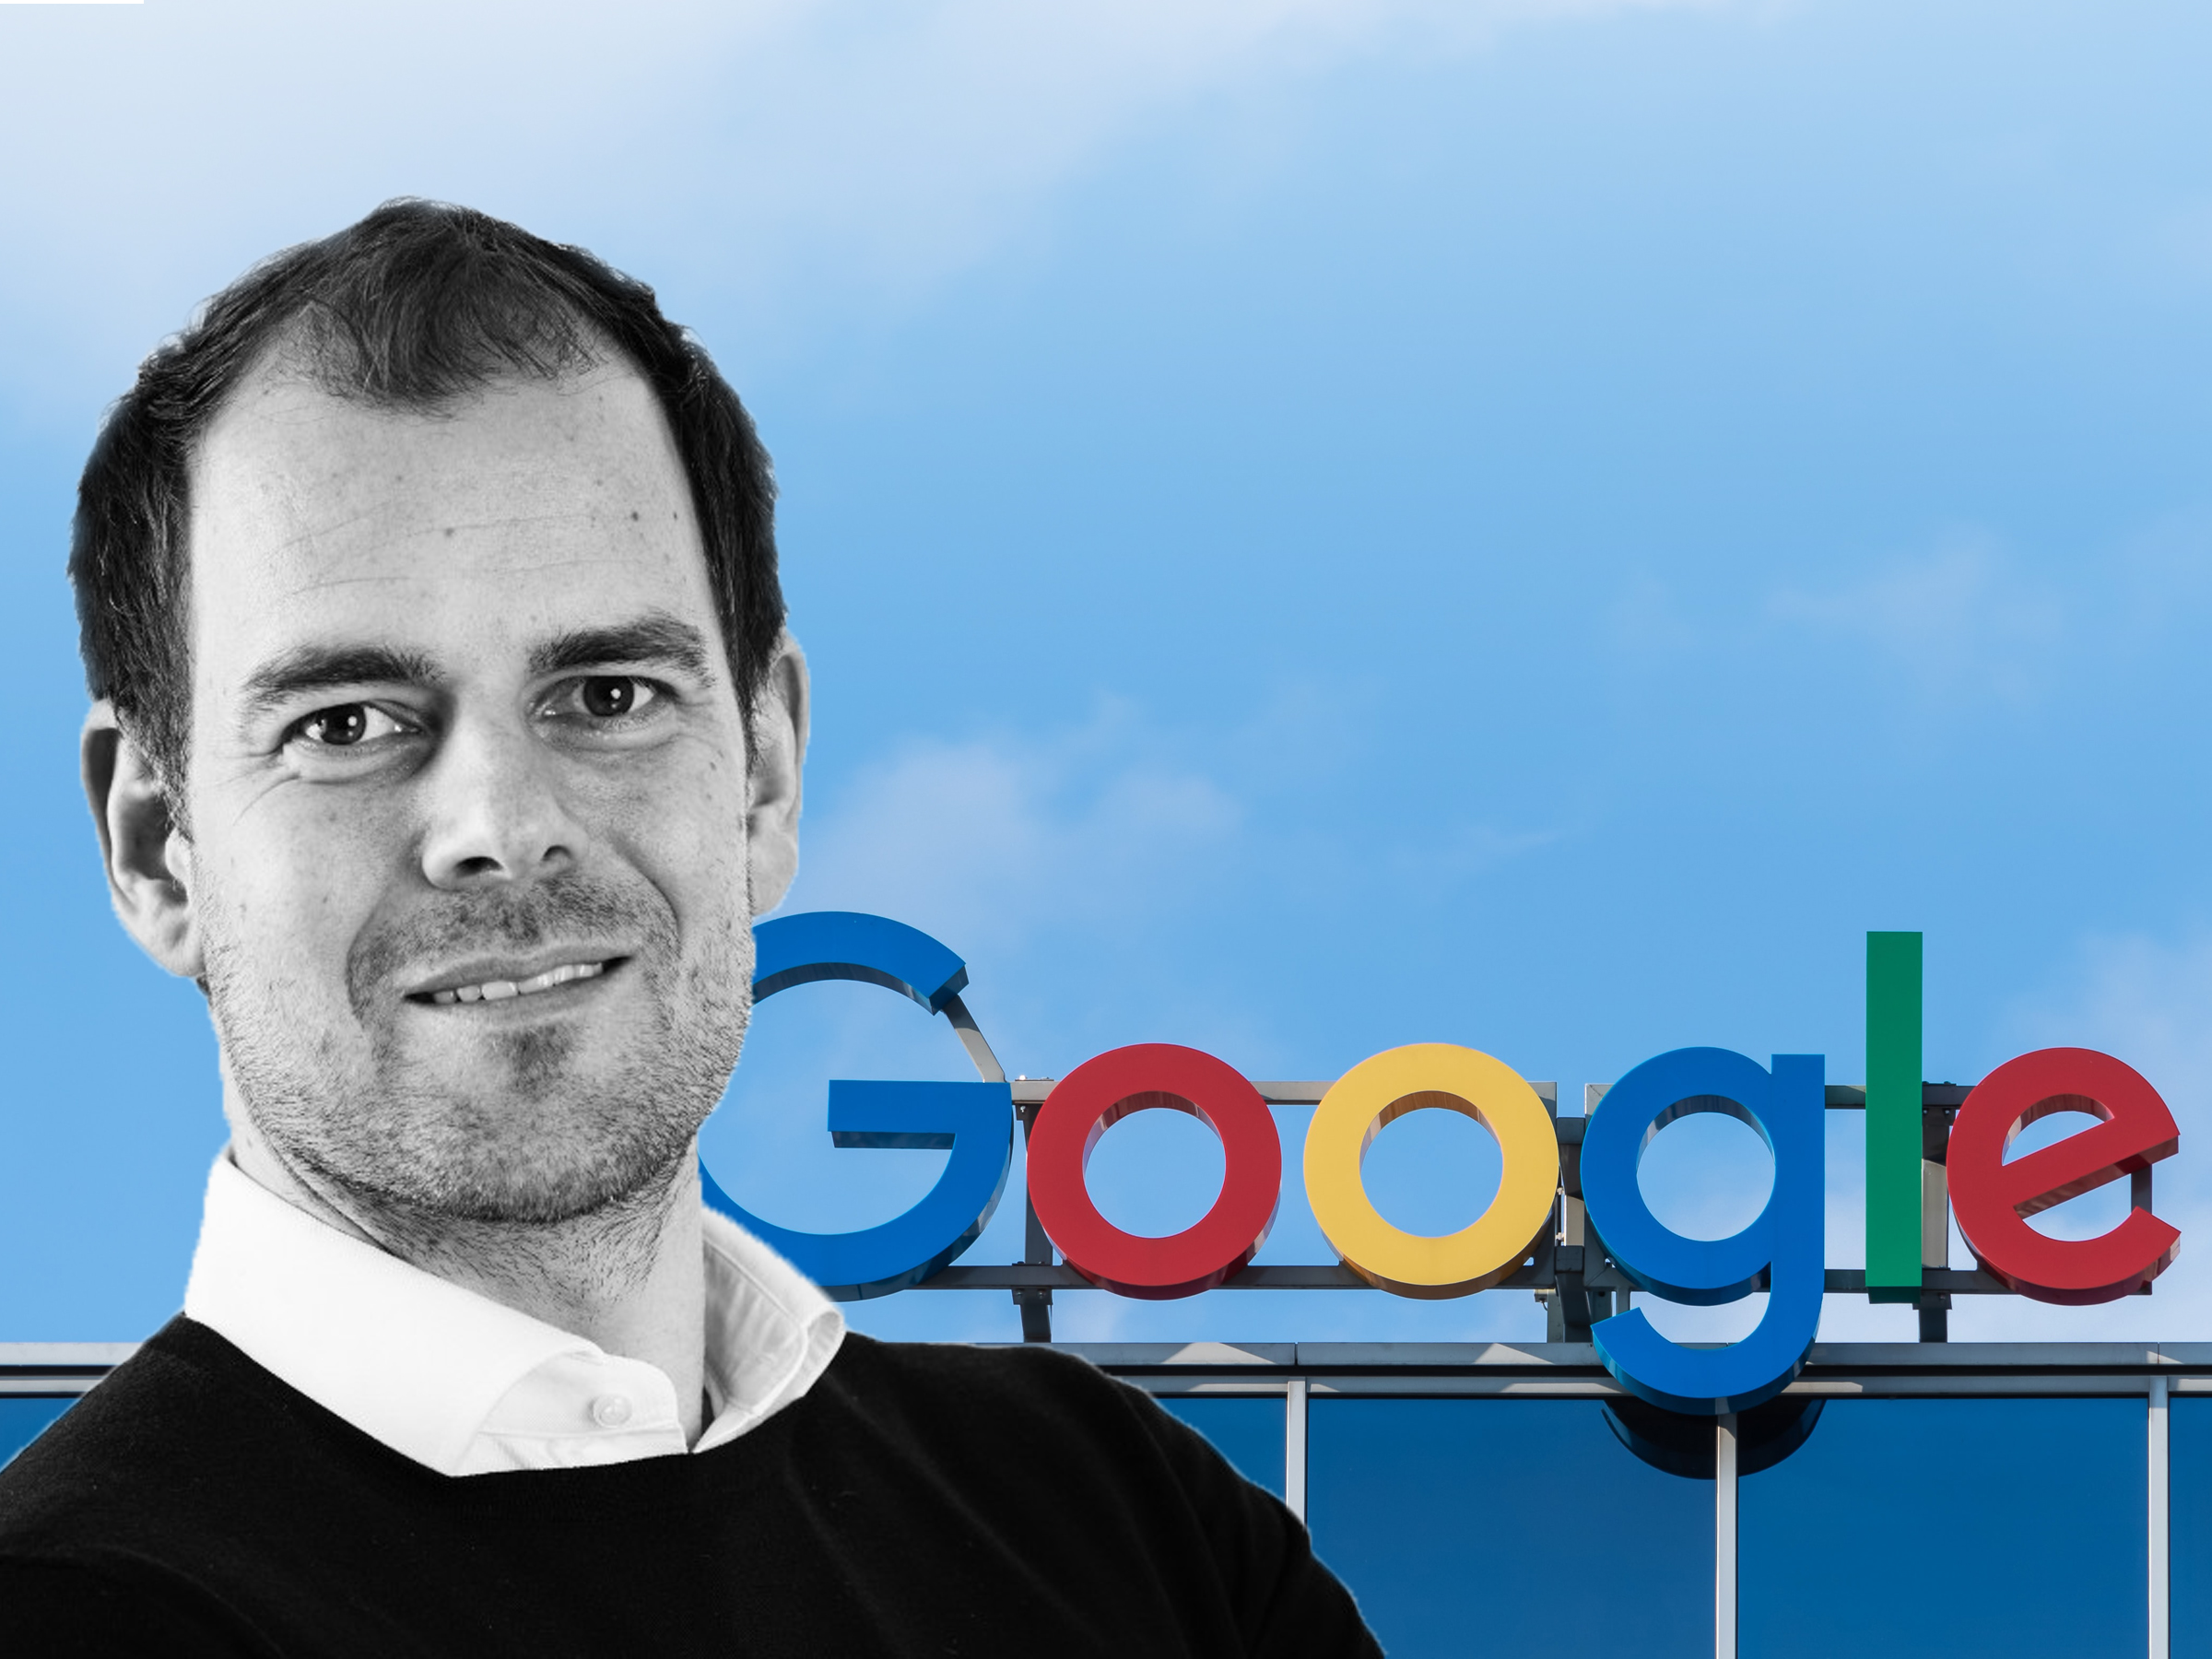 Martijn Bertisen is per 1 juli 2020 de nieuwe directeur van Google Nederland.